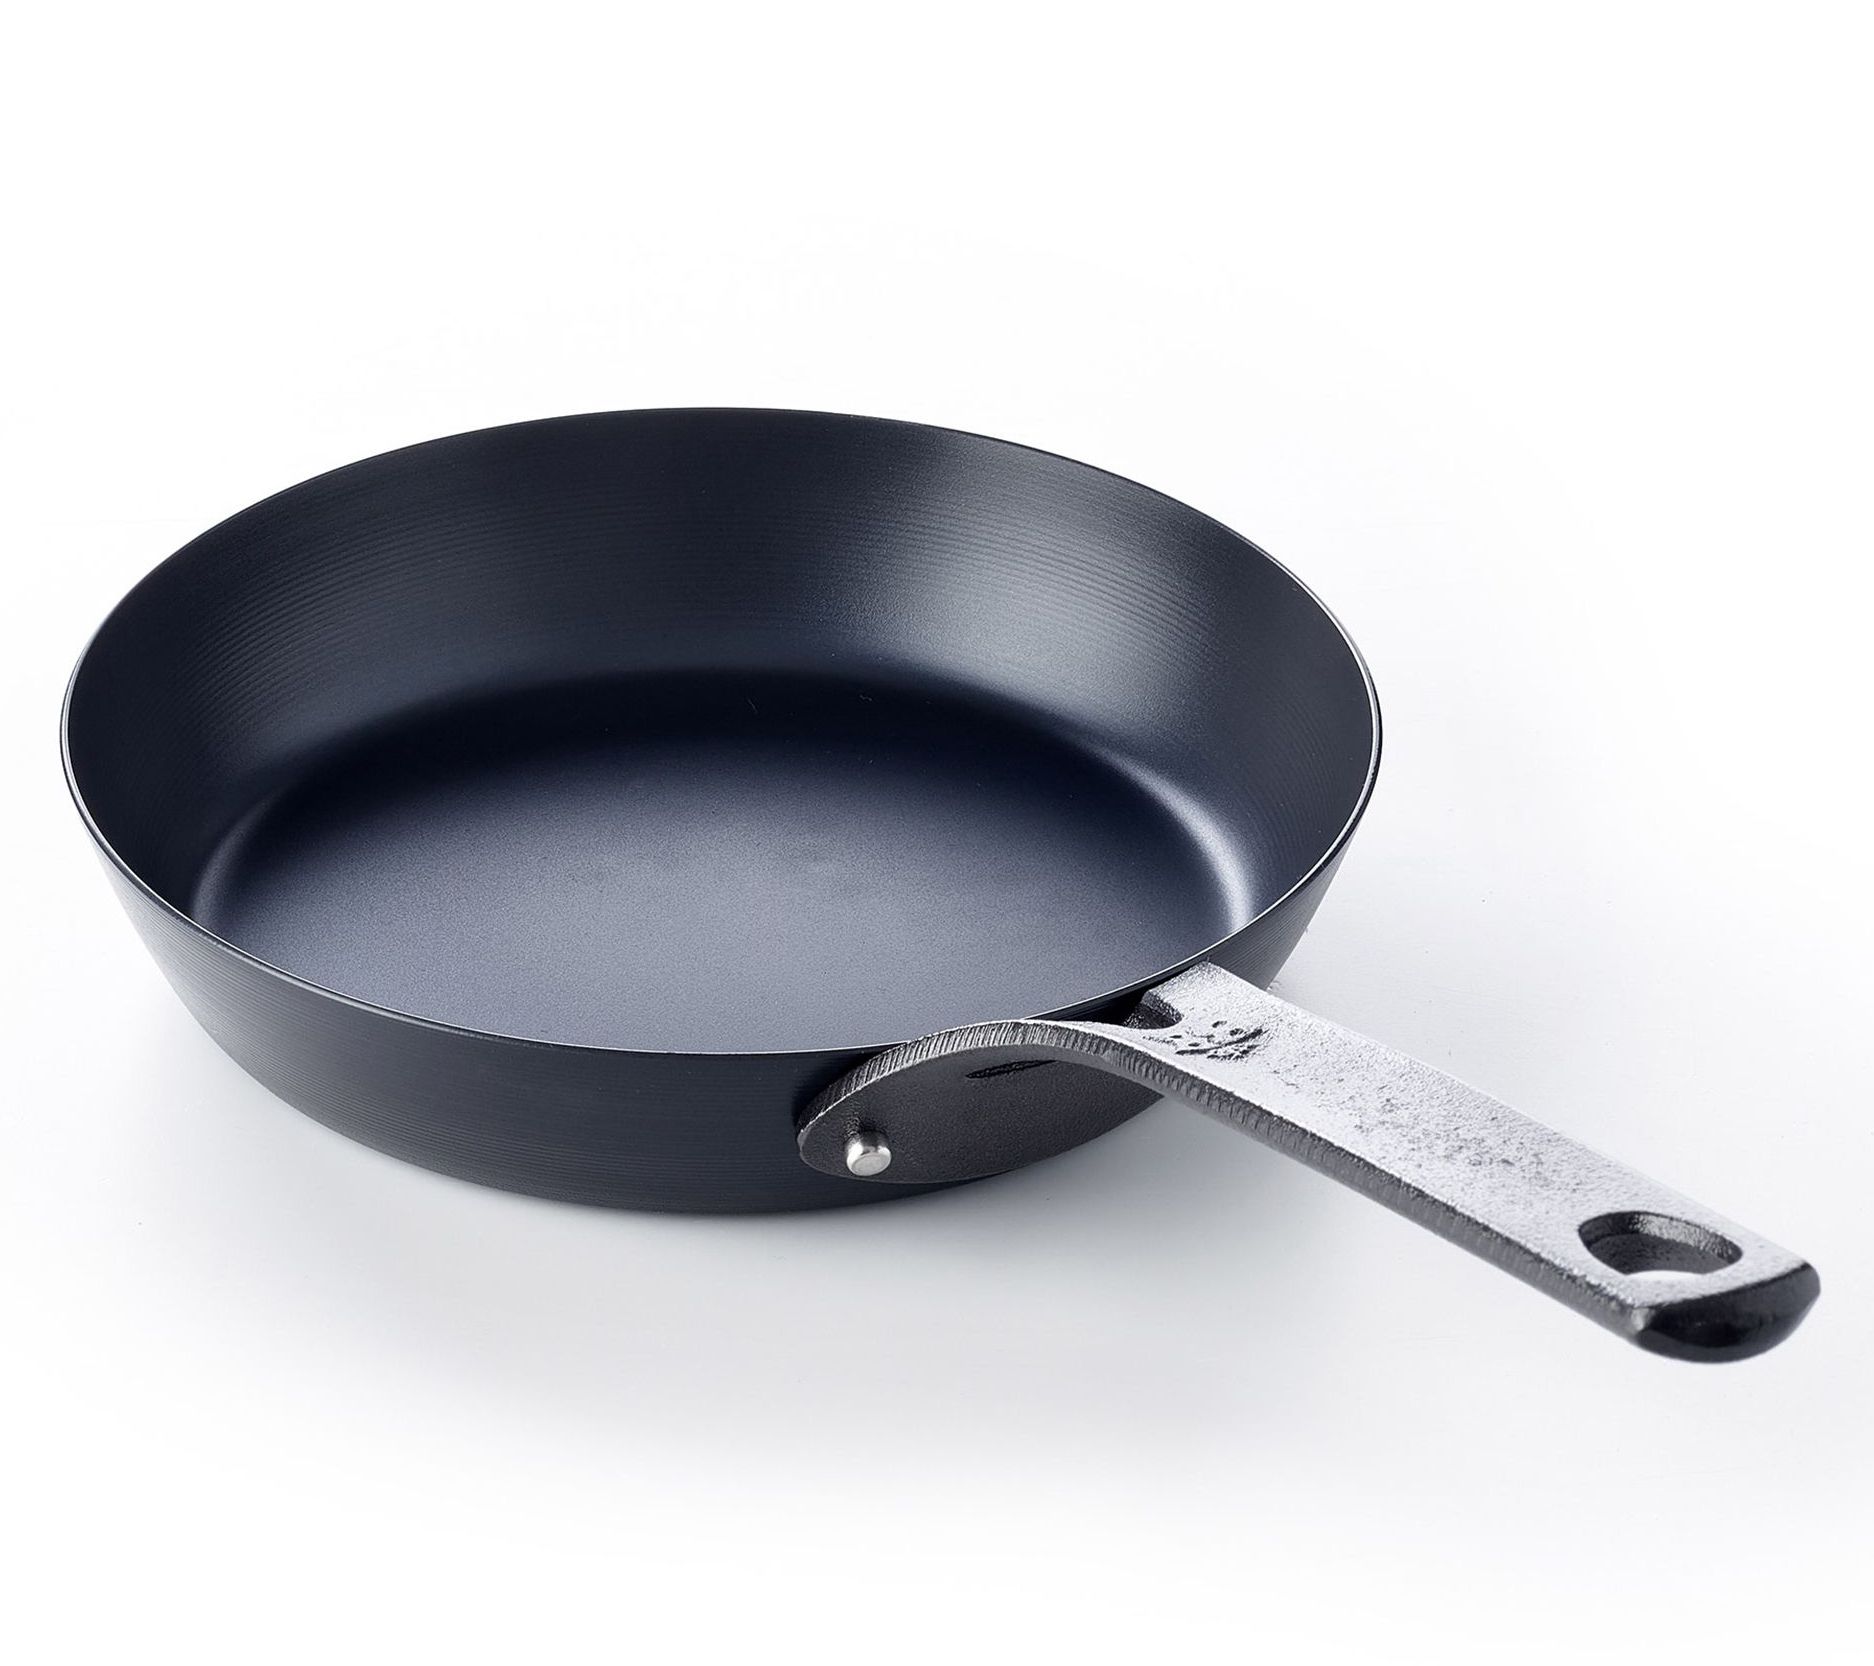 11,8-inch Pre-Seasoned Black Carbon Steel Skillet Pan